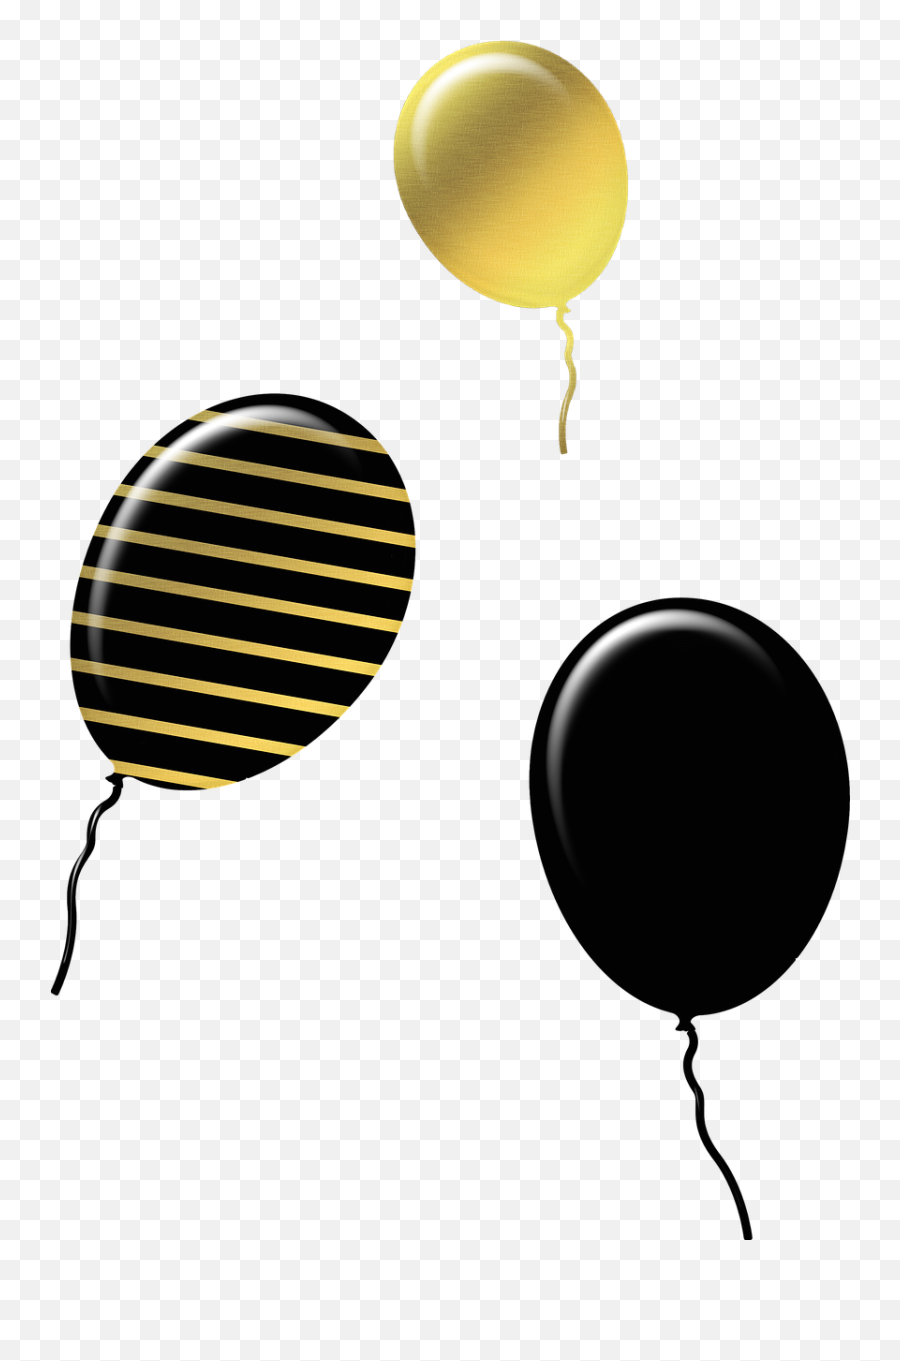 Gold And Black Balloons Ballons - Free Image On Pixabay Balão Preto E Dourado Png Emoji,Gold Balloons Png